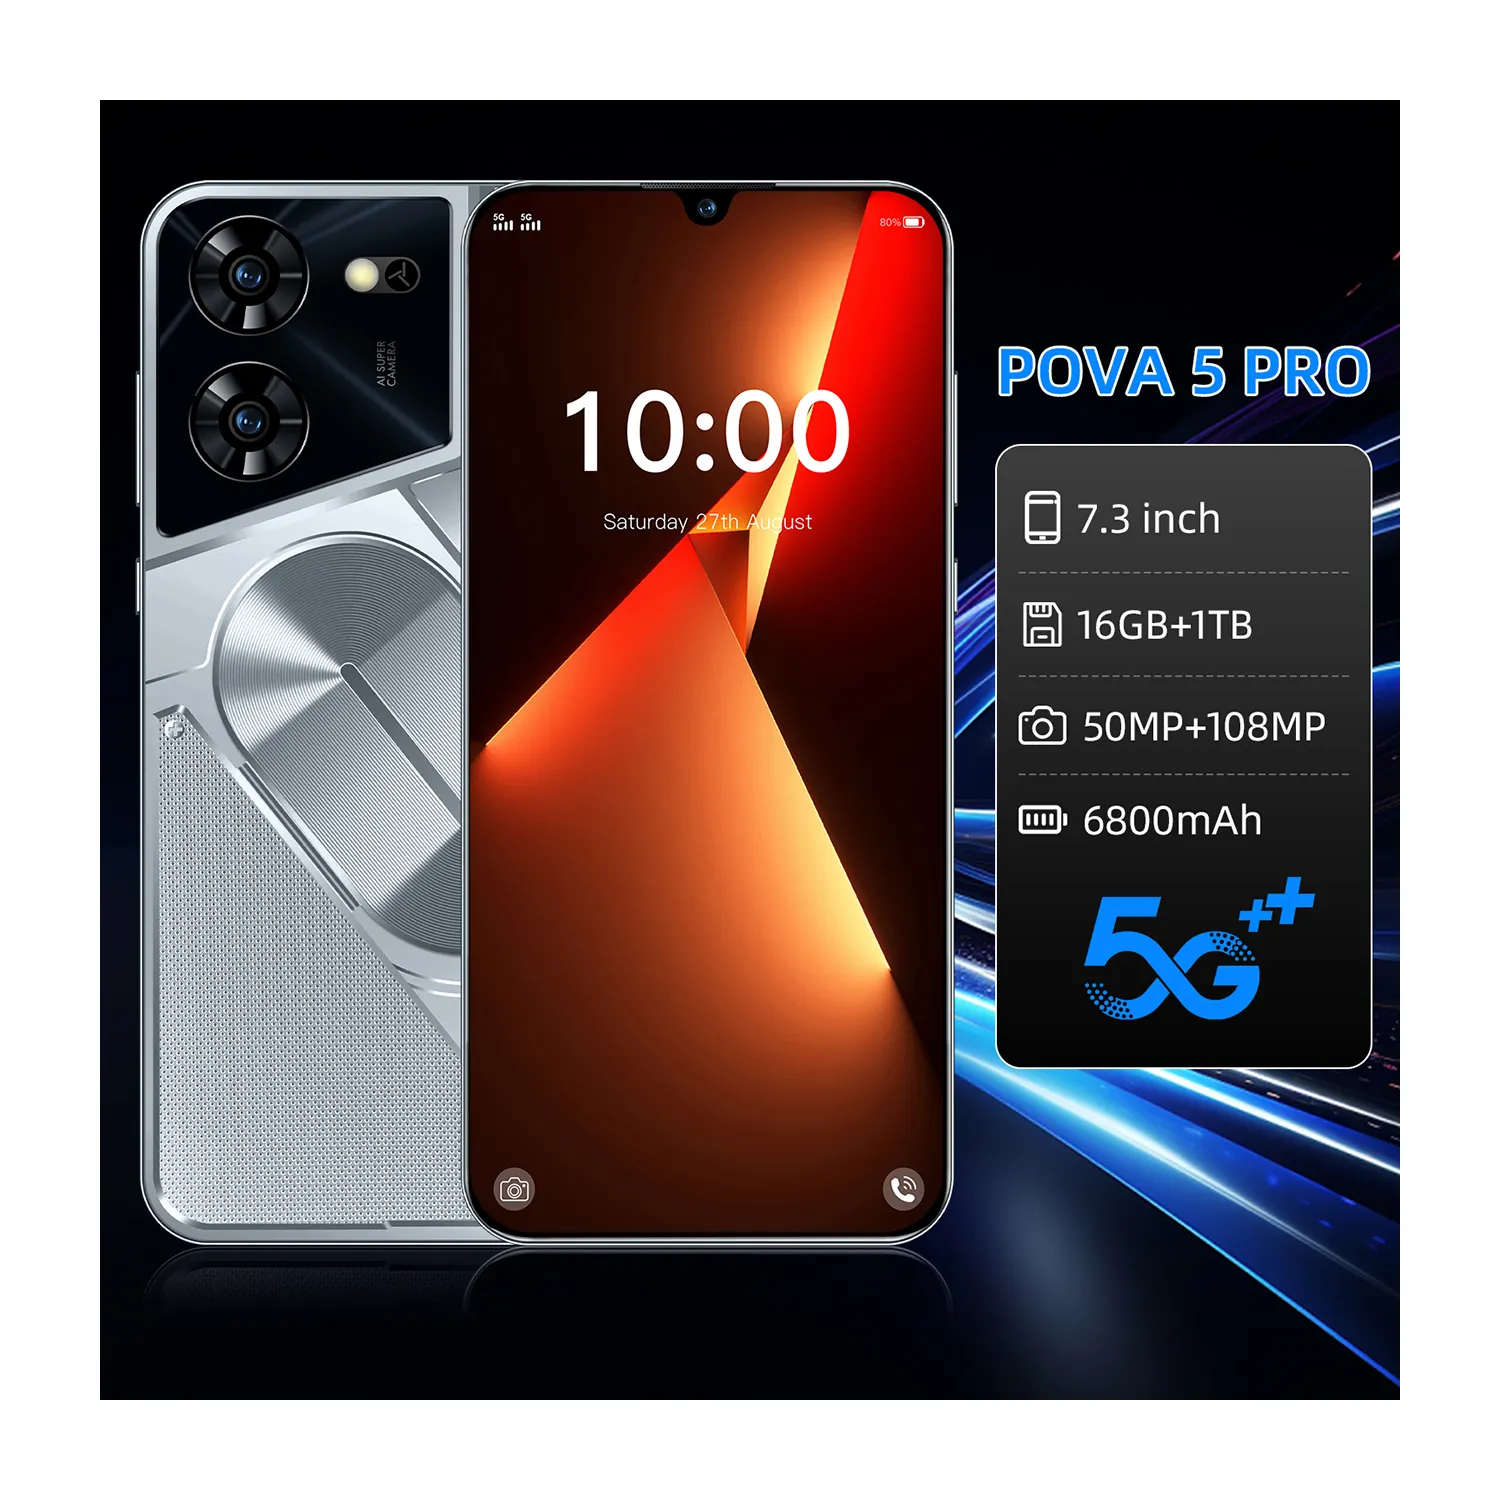 هواتف Pova 5 Pro الأصلية رخيصة السعر عالية الوضوح 7.3 بوصة شحن مجاني 50 ميجابكسل + 108 ميجابكسل هاتف محمول مرحبًا